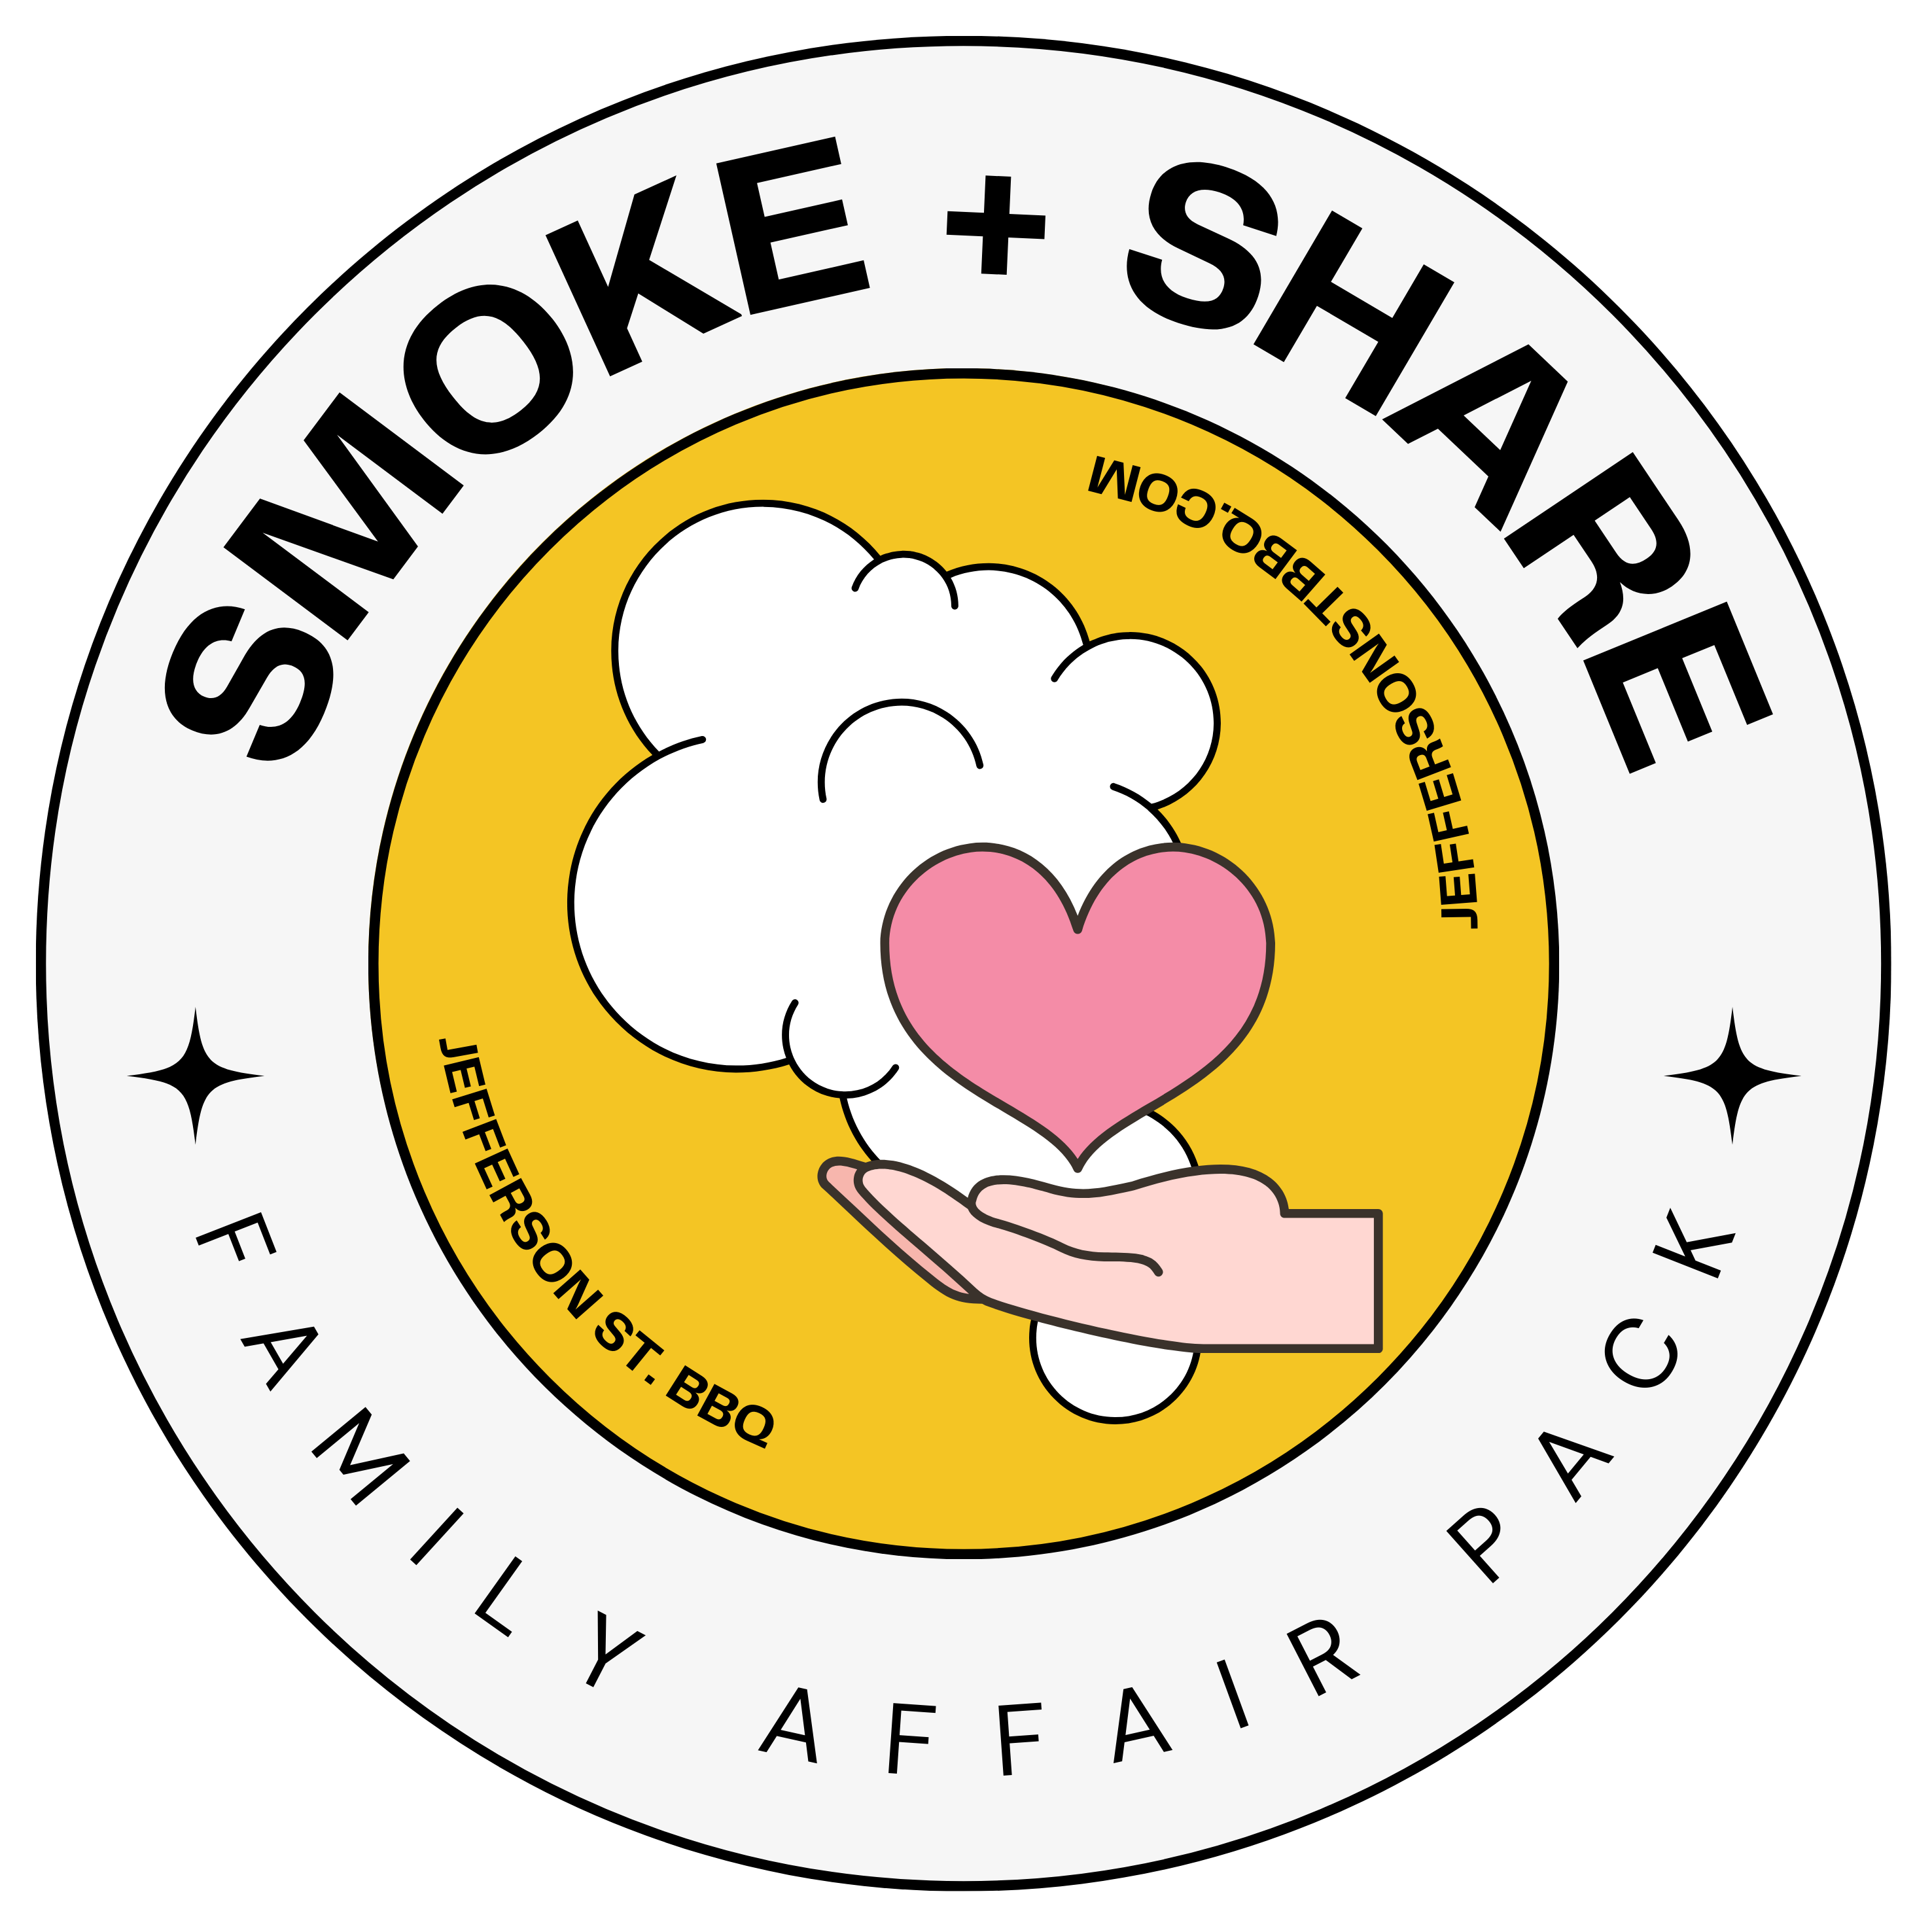 Smoke & Share